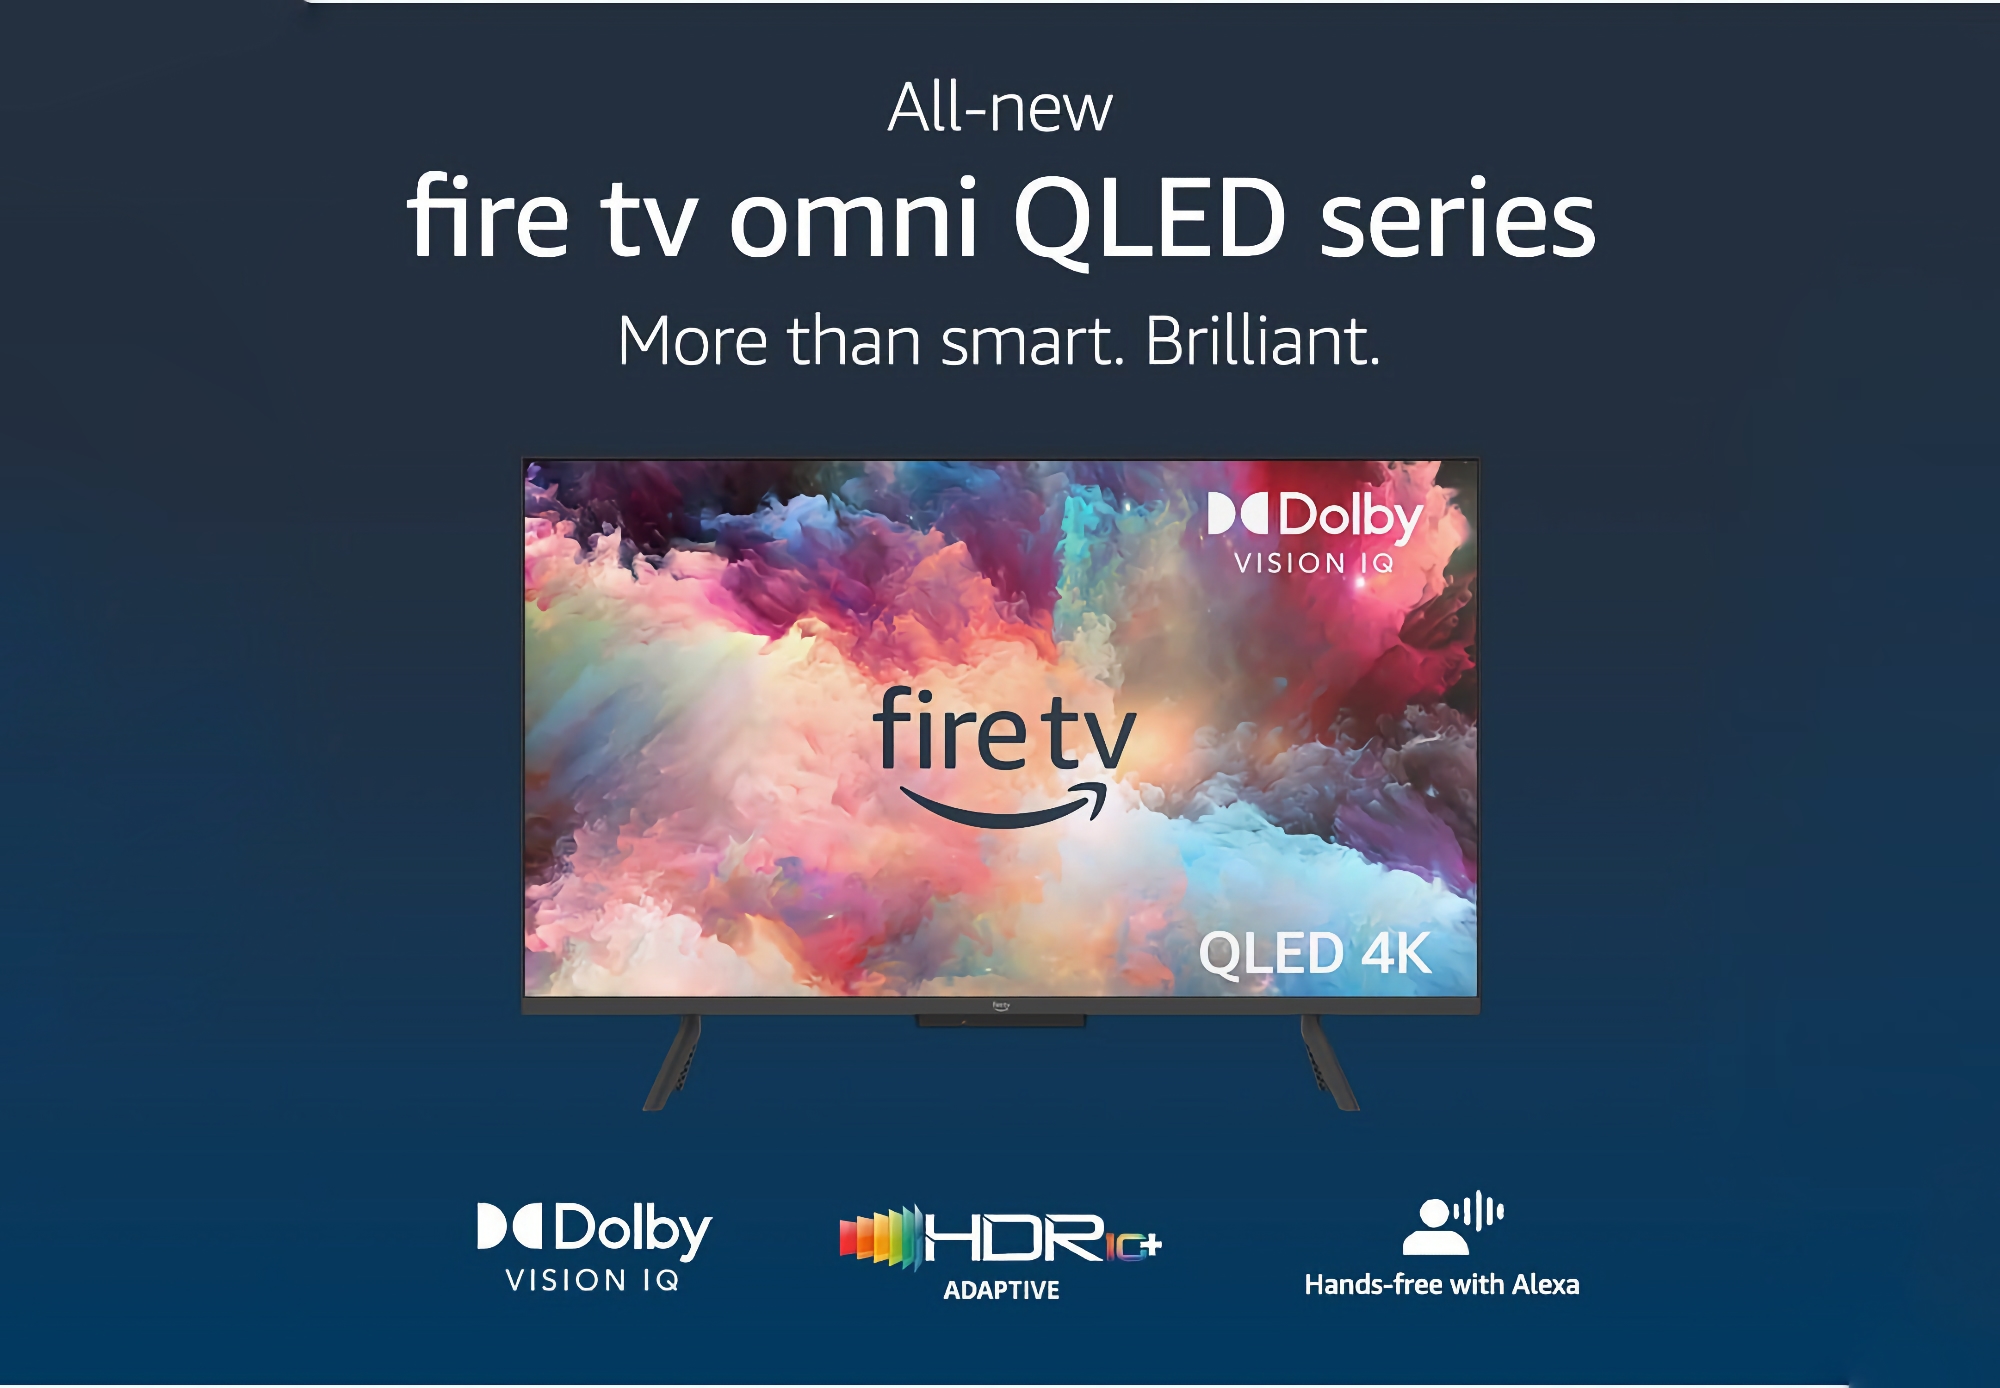 Amazon desvela los nuevos modelos Fire TV Omni QLED: televisores inteligentes con pantallas de 43 a 55 pulgadas, compatibilidad con Alexa y precios desde 449 €.